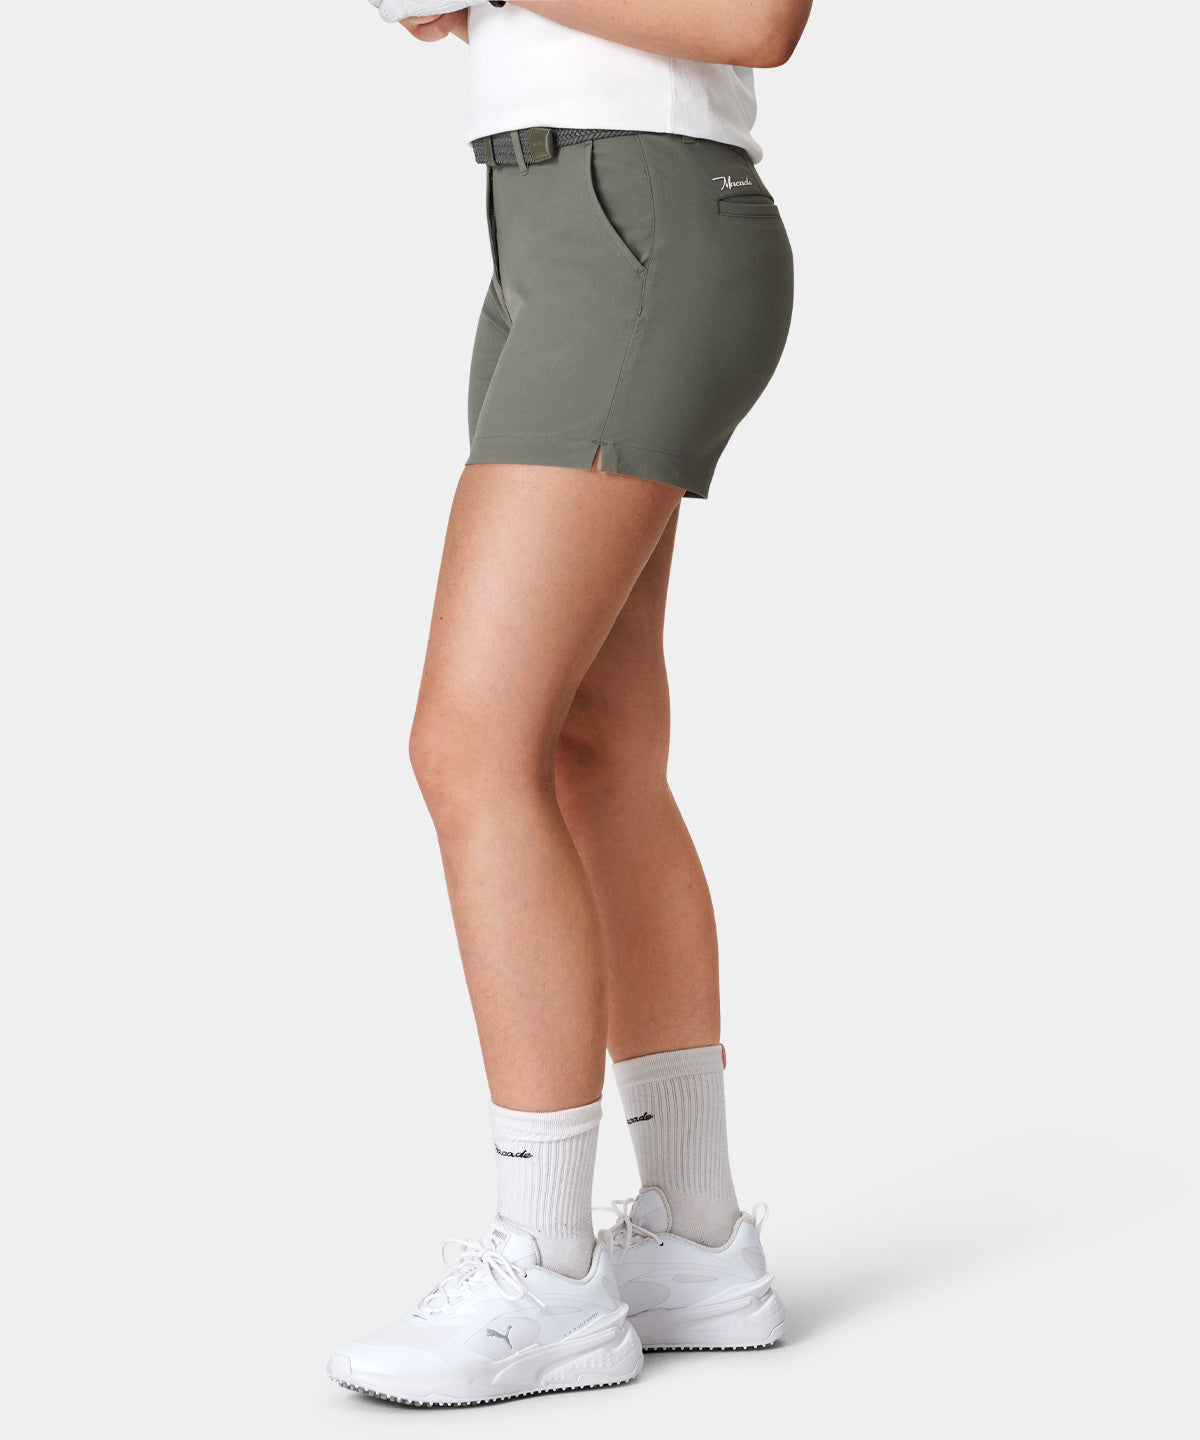 Jade Green Flex Shorts